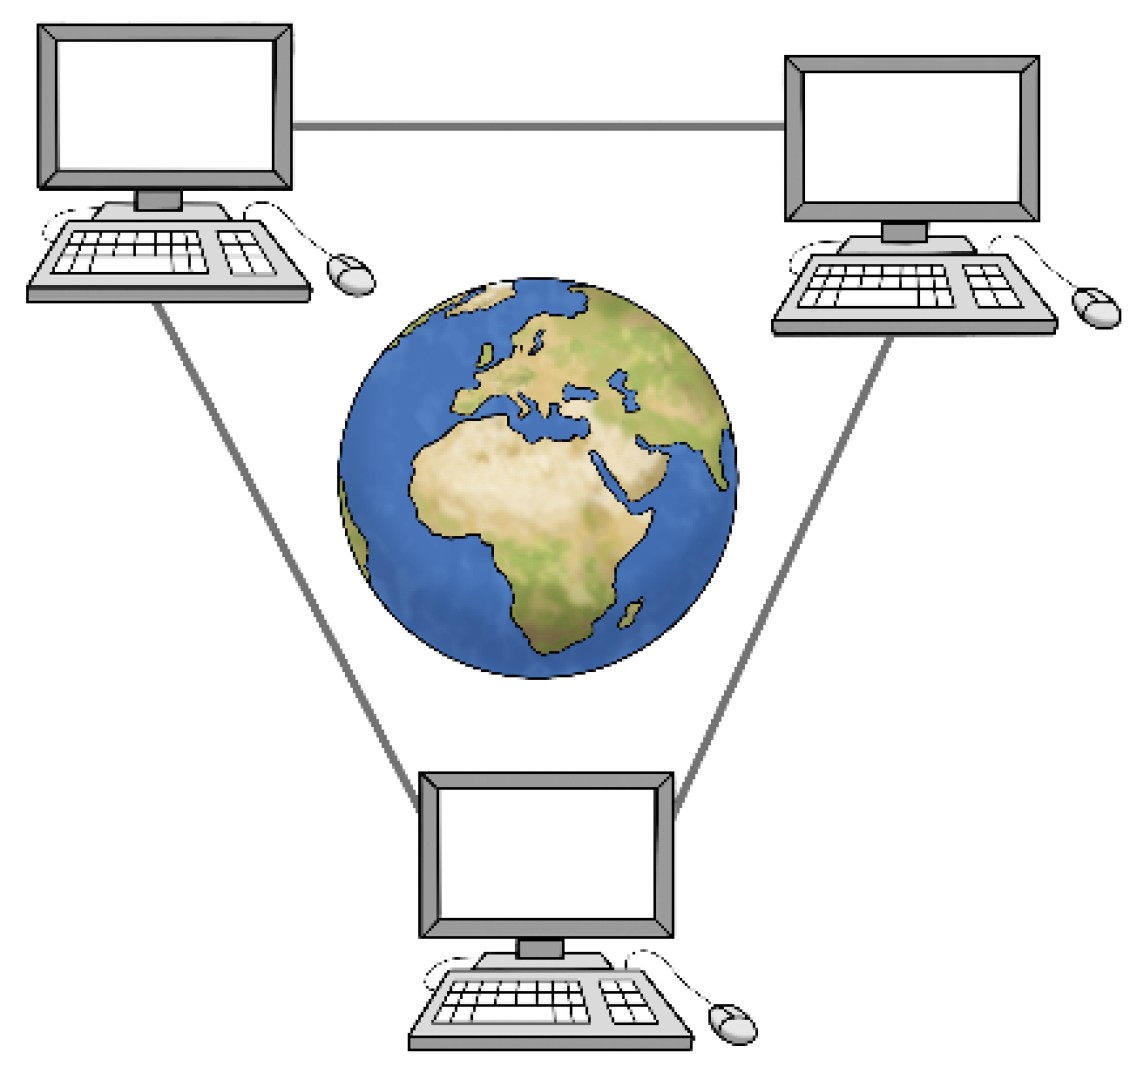 Das Bild zeigt 3 Computer, die miteinander verbunden sind.  Zwischen den Computern sieht man eine Welt-Kugel.